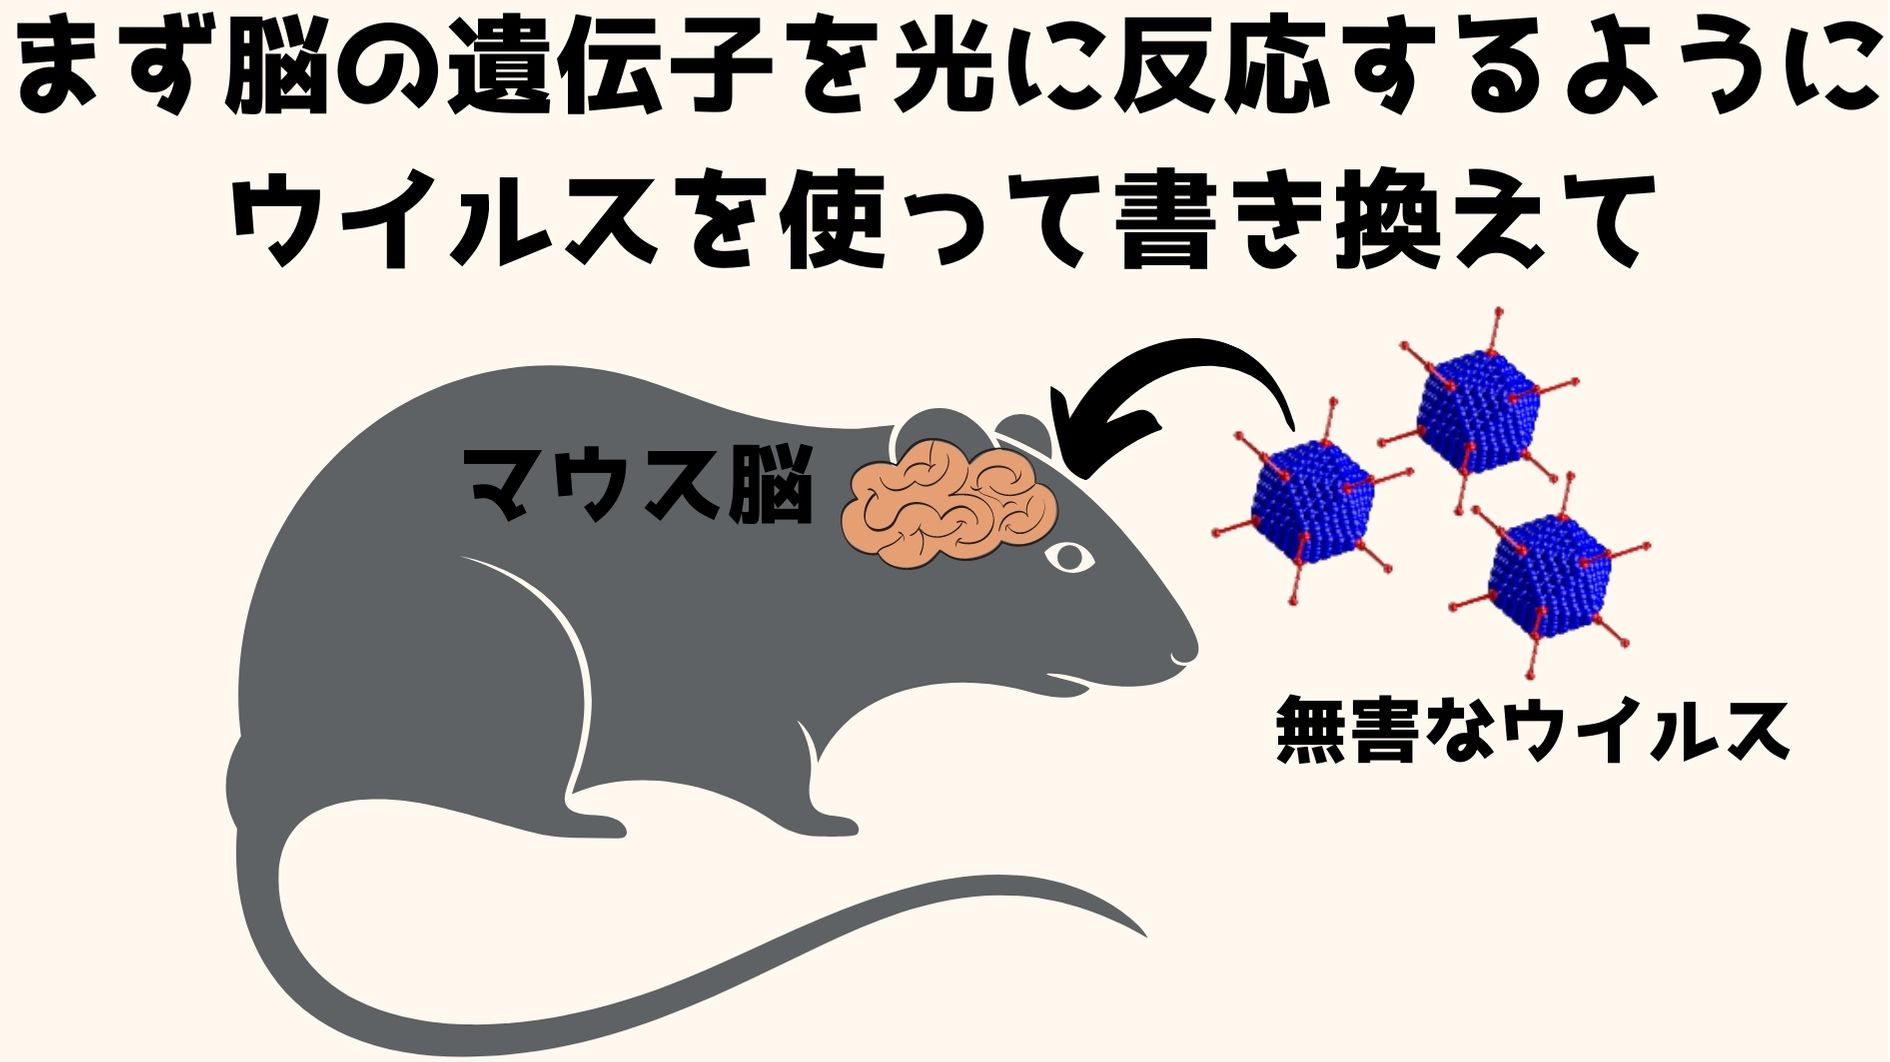 マウスの脳細胞を光に反応するように、ウイルスを使って遺伝子を書き換える